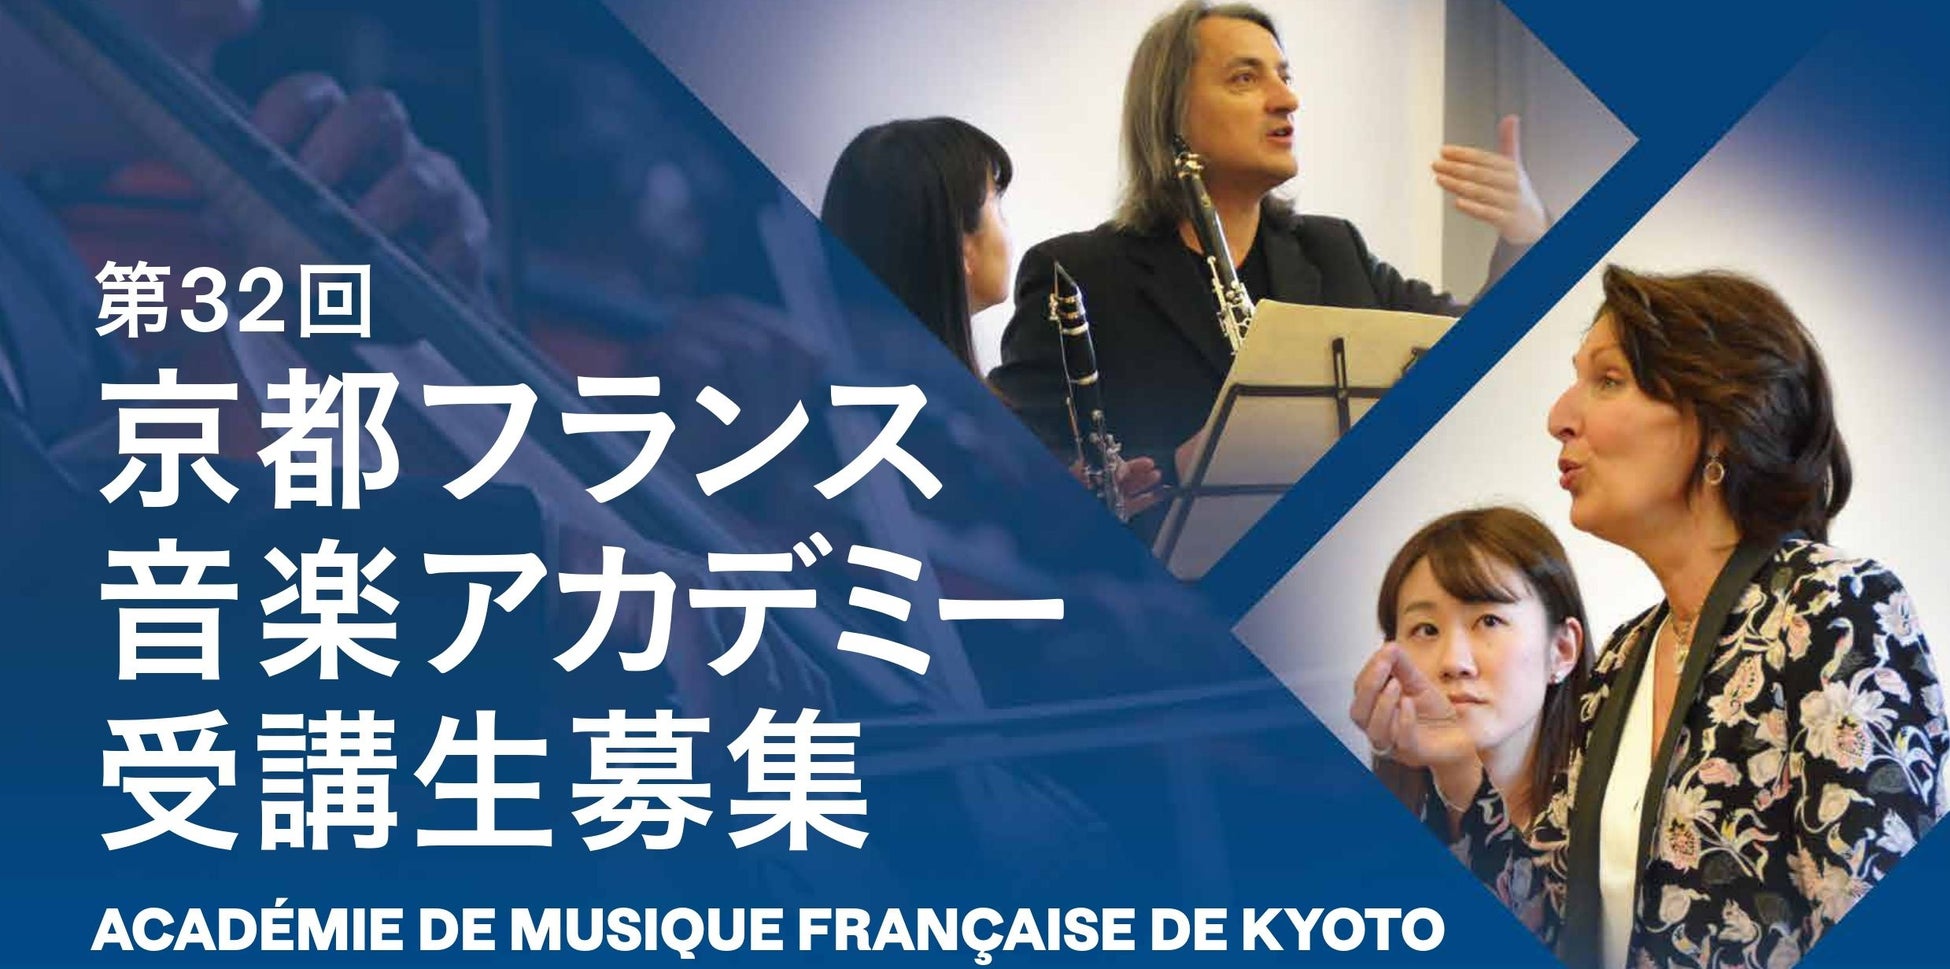 クラシック音楽のマスタークラスを受講しよう！第32回 京都フランス音楽アカデミー 受講生募集～4年ぶりに一流の演奏家がフランスより来日